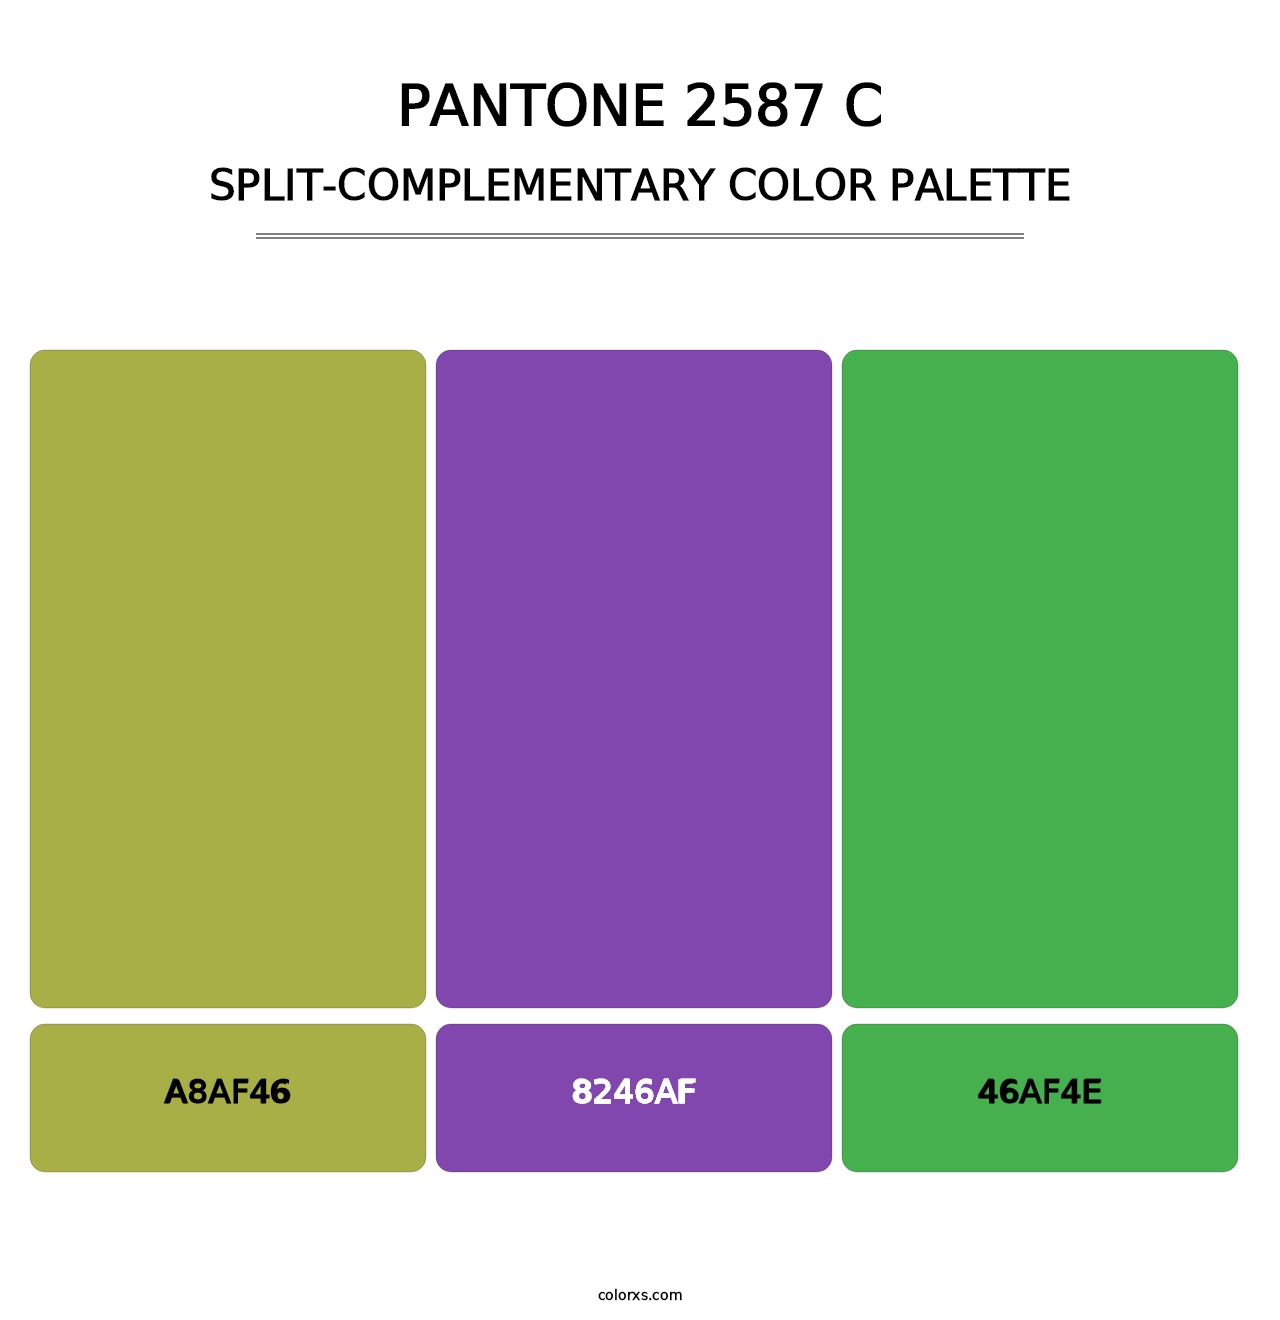 PANTONE 2587 C - Split-Complementary Color Palette